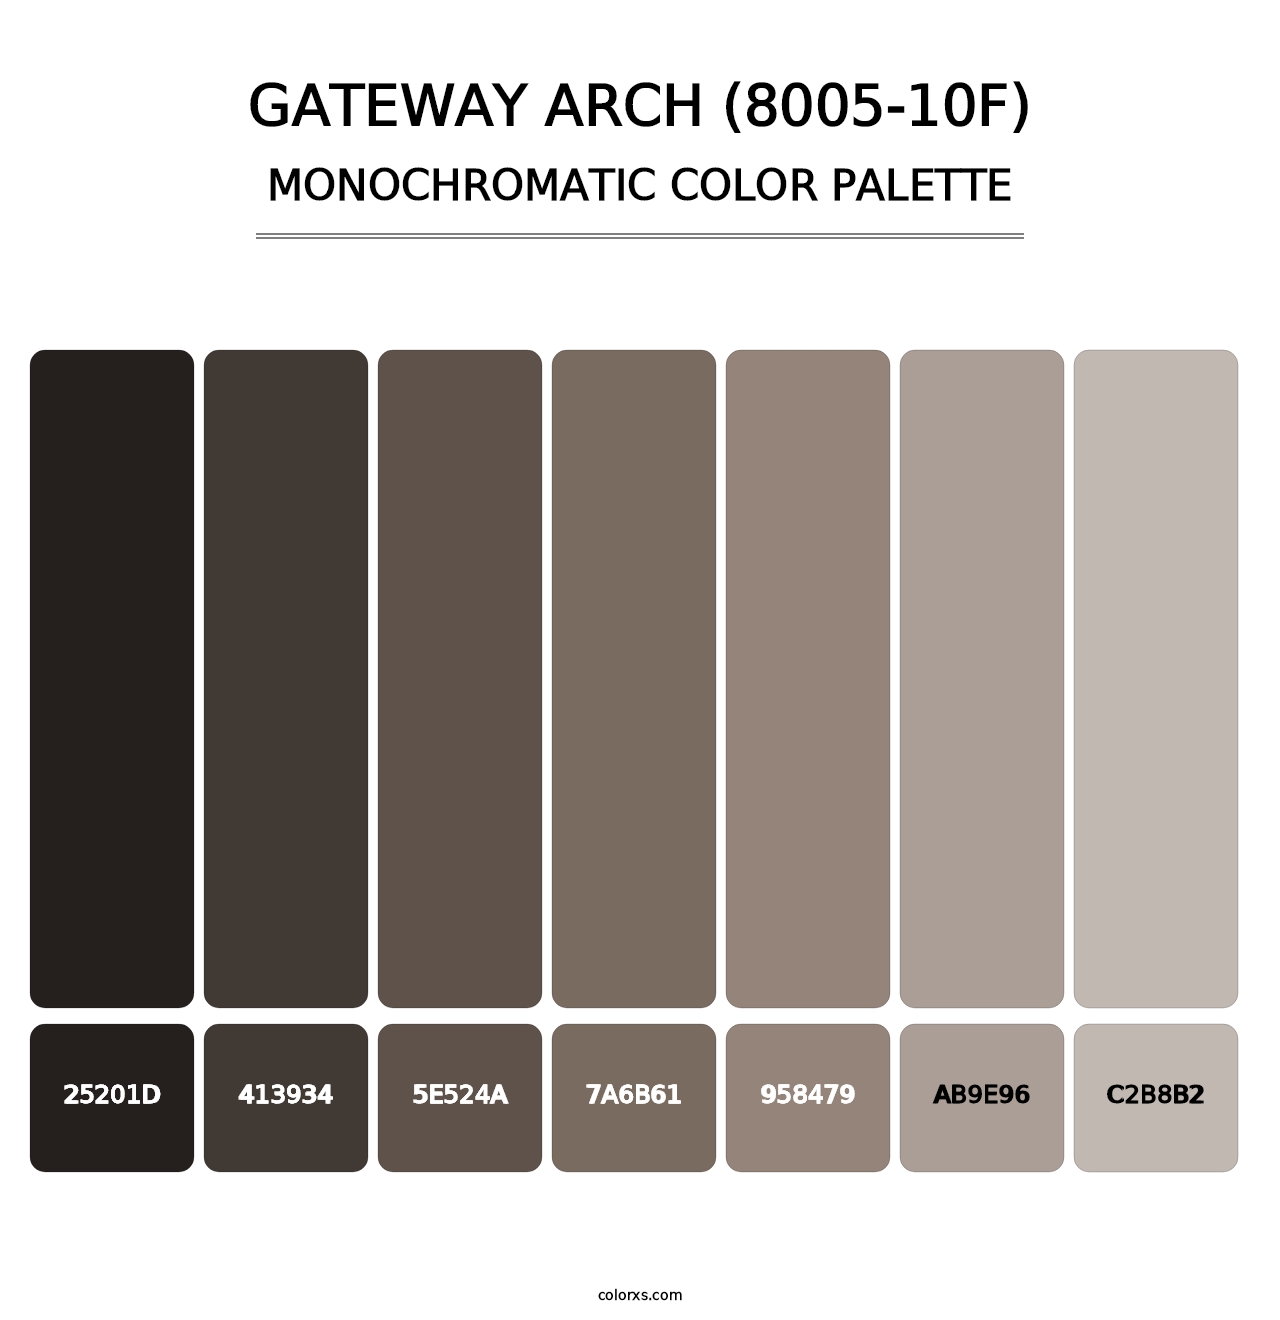 Gateway Arch (8005-10F) - Monochromatic Color Palette